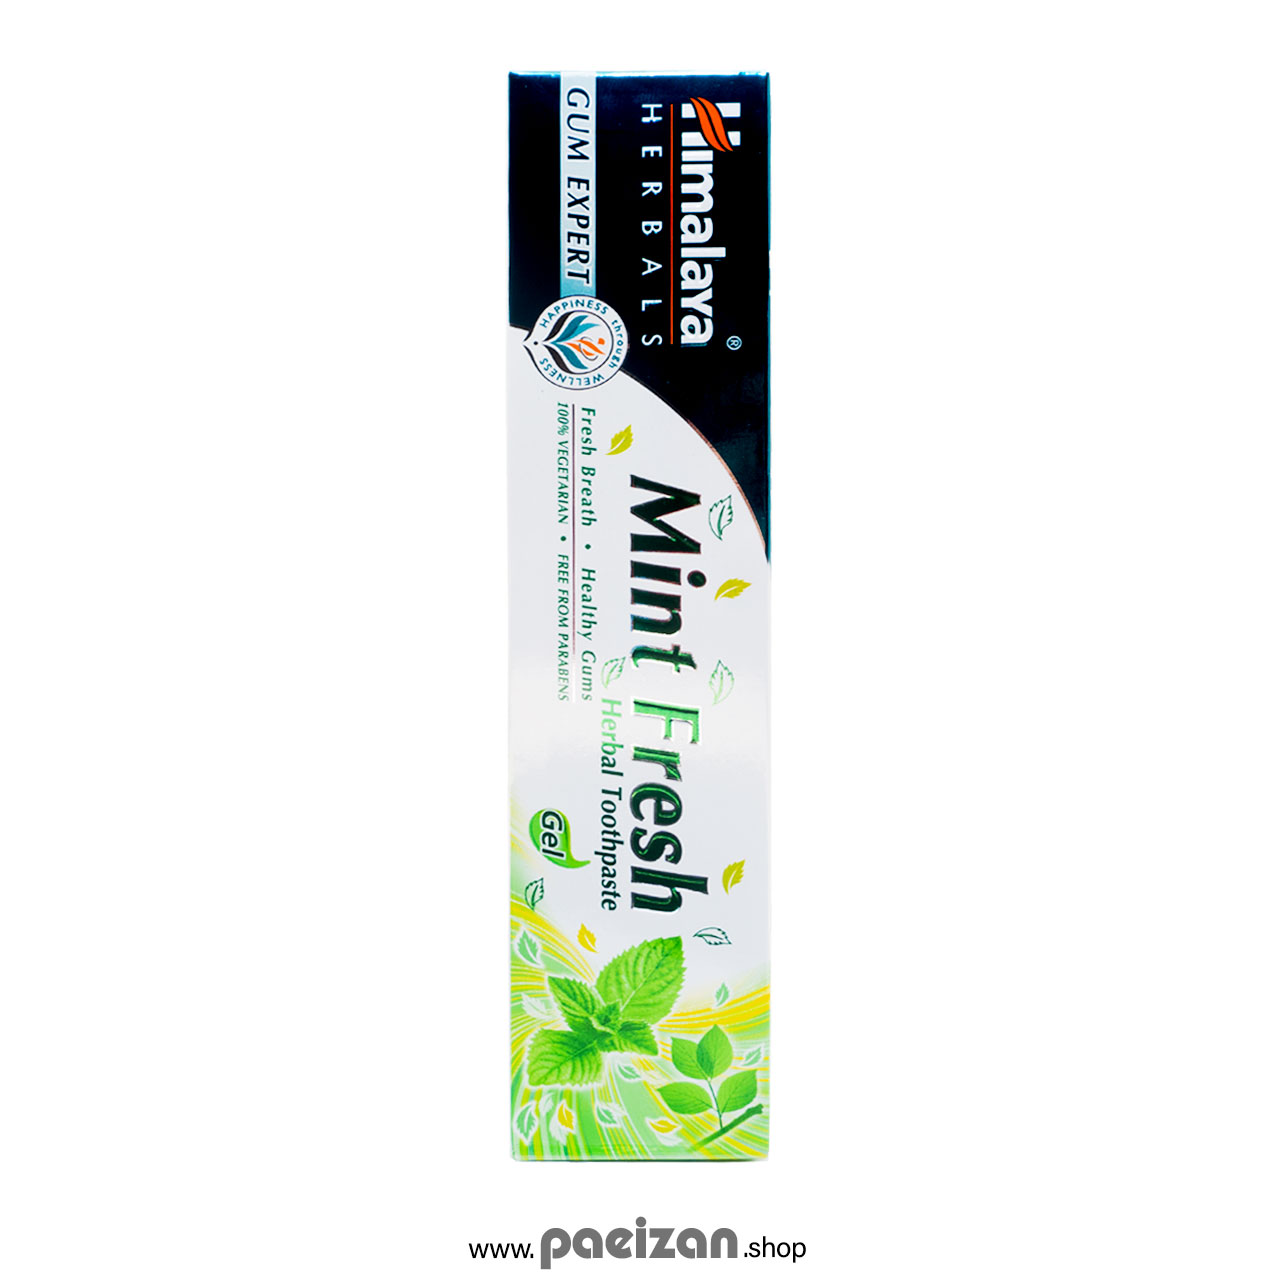 خمیر دندان گیاهی Mint Fresh هیمالیا